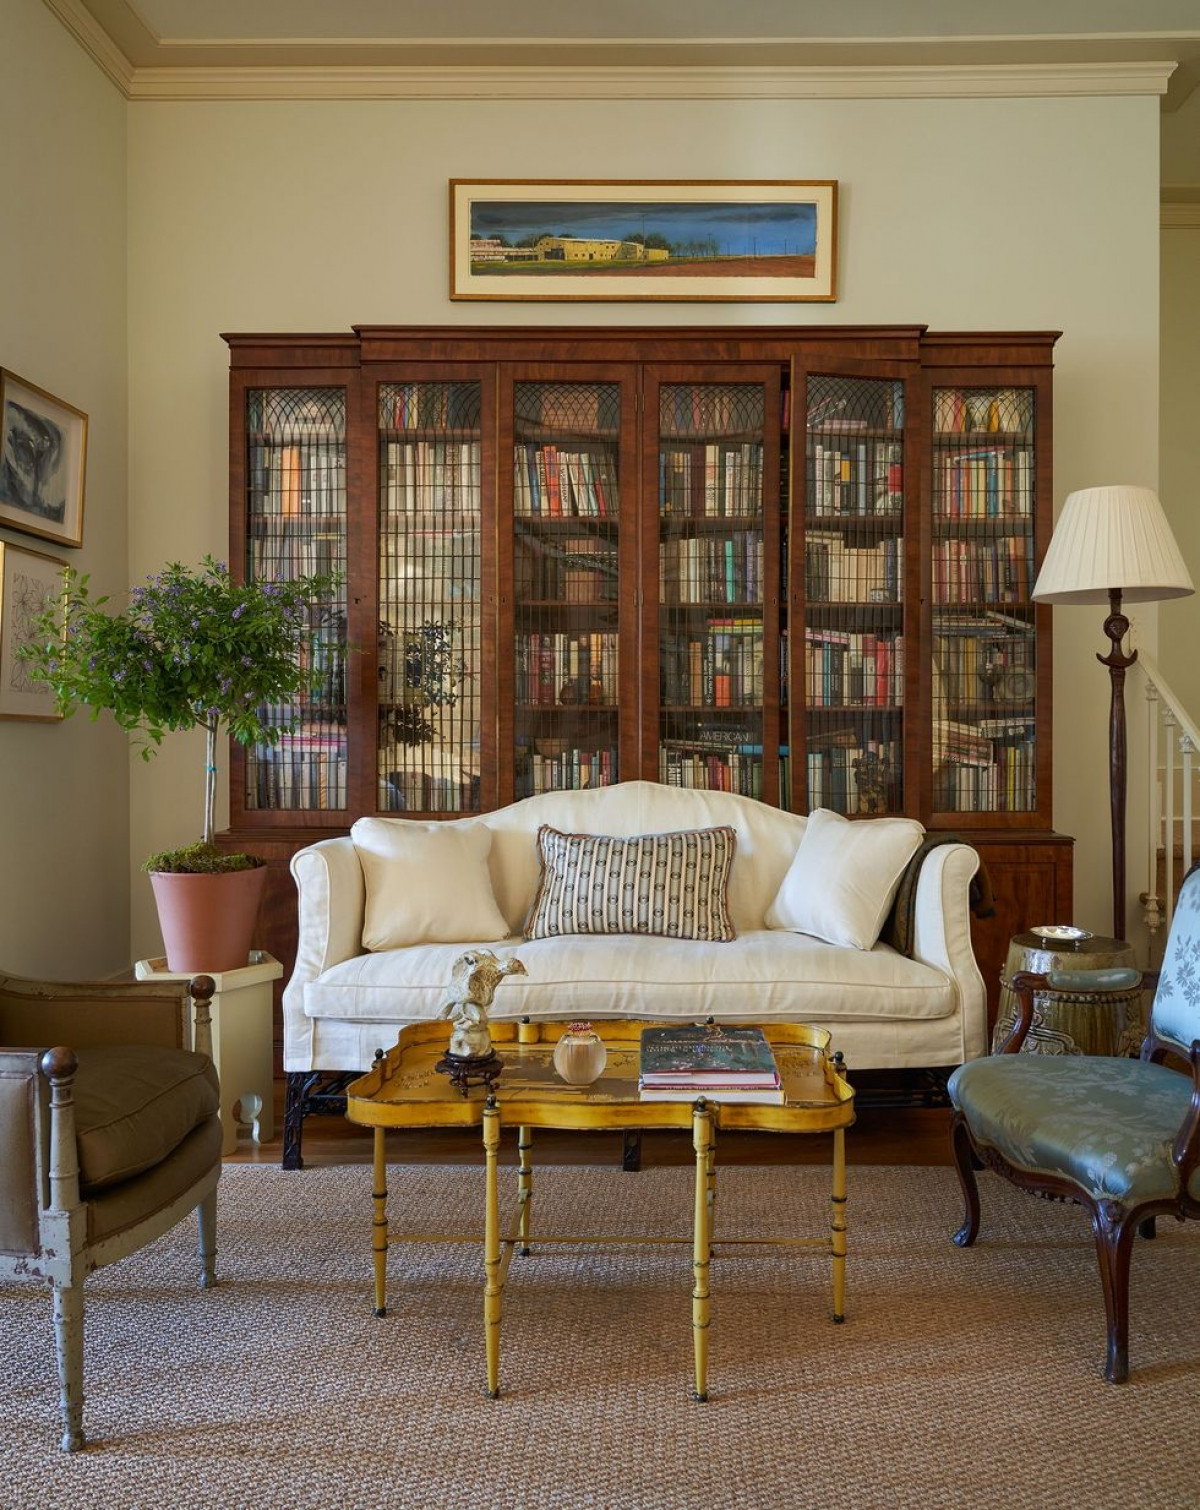 Thay đổi diện mạo cho căn phòng dễ dàng nhất là thay đổi màu sơn. Với mùa thu, hãy chọn một tone màu ấm áp như vàng nhạt, kết hợp với các đồ nội thất cổ điển phù hợp.